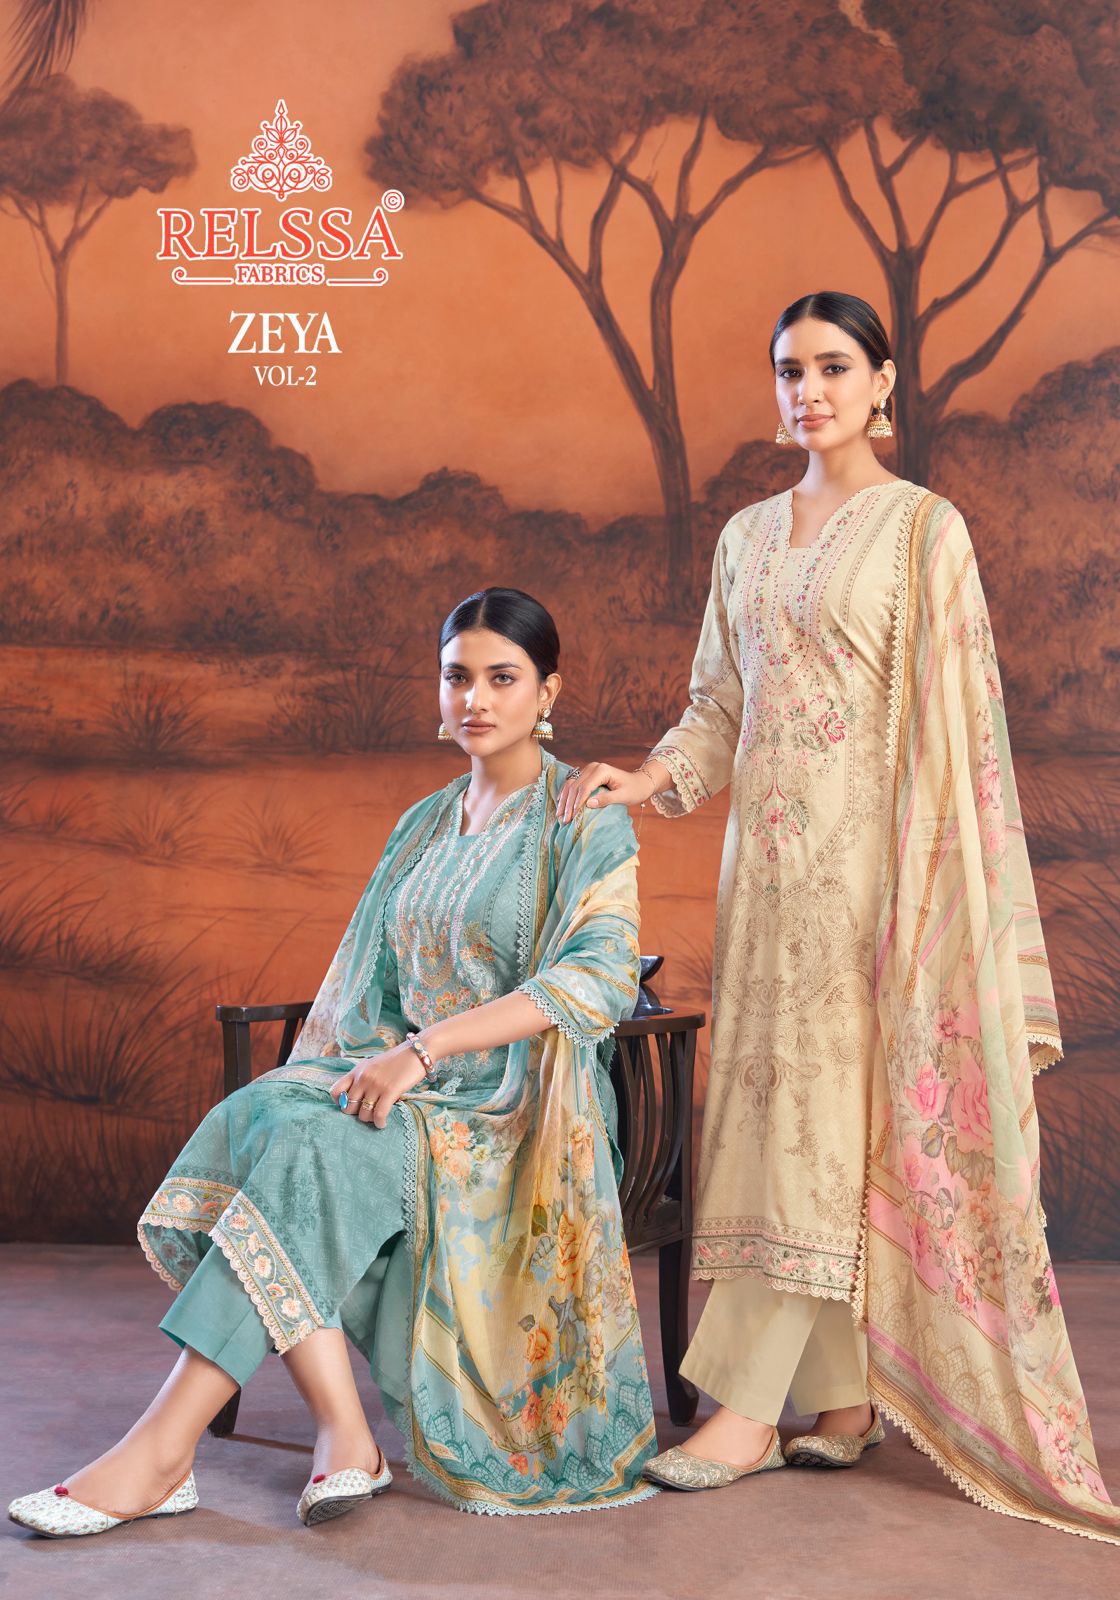 Zeya Vol 2 Relssa Fabrics Cotton Lawn Pant Style Suits